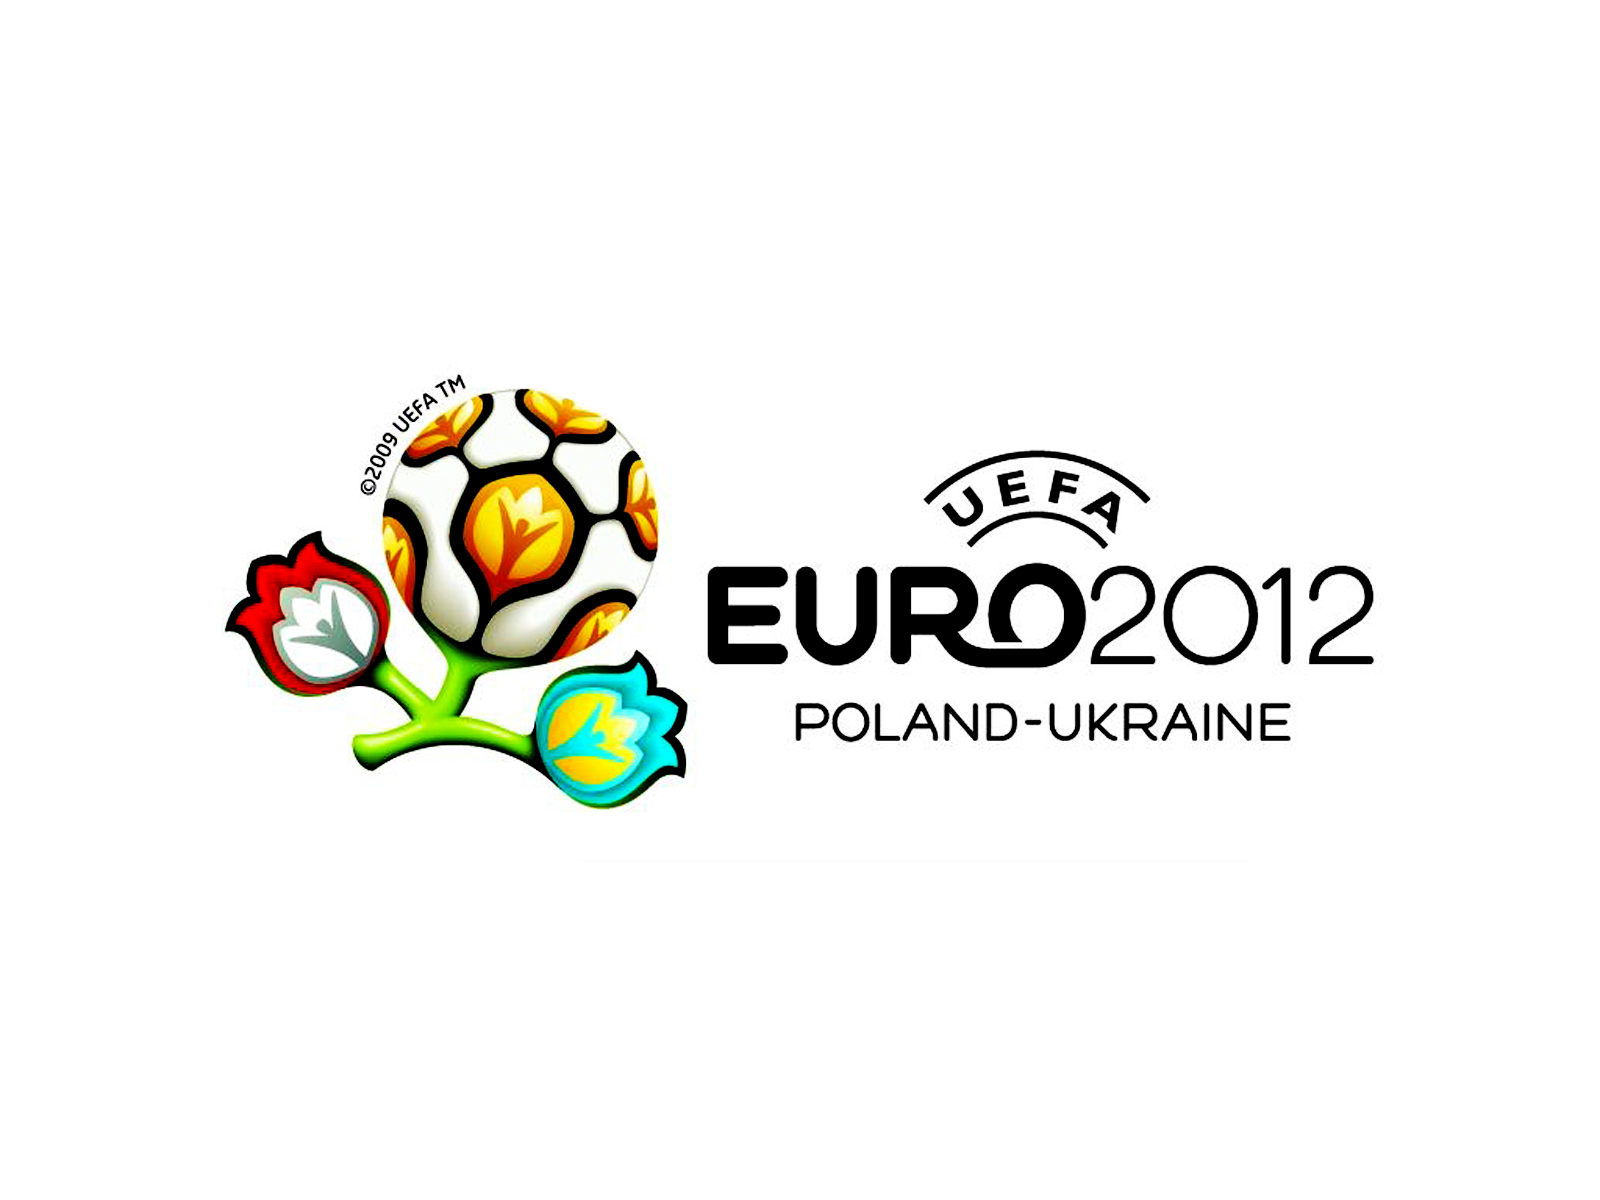 http://1.bp.blogspot.com/-lKaSsUsloiw/TxQ7sszISDI/AAAAAAAAAWA/rzXtH3UfmL0/s1600/Euro_2012_Logo_HD_Wallpaper-Vvallpaper.Net.jpg